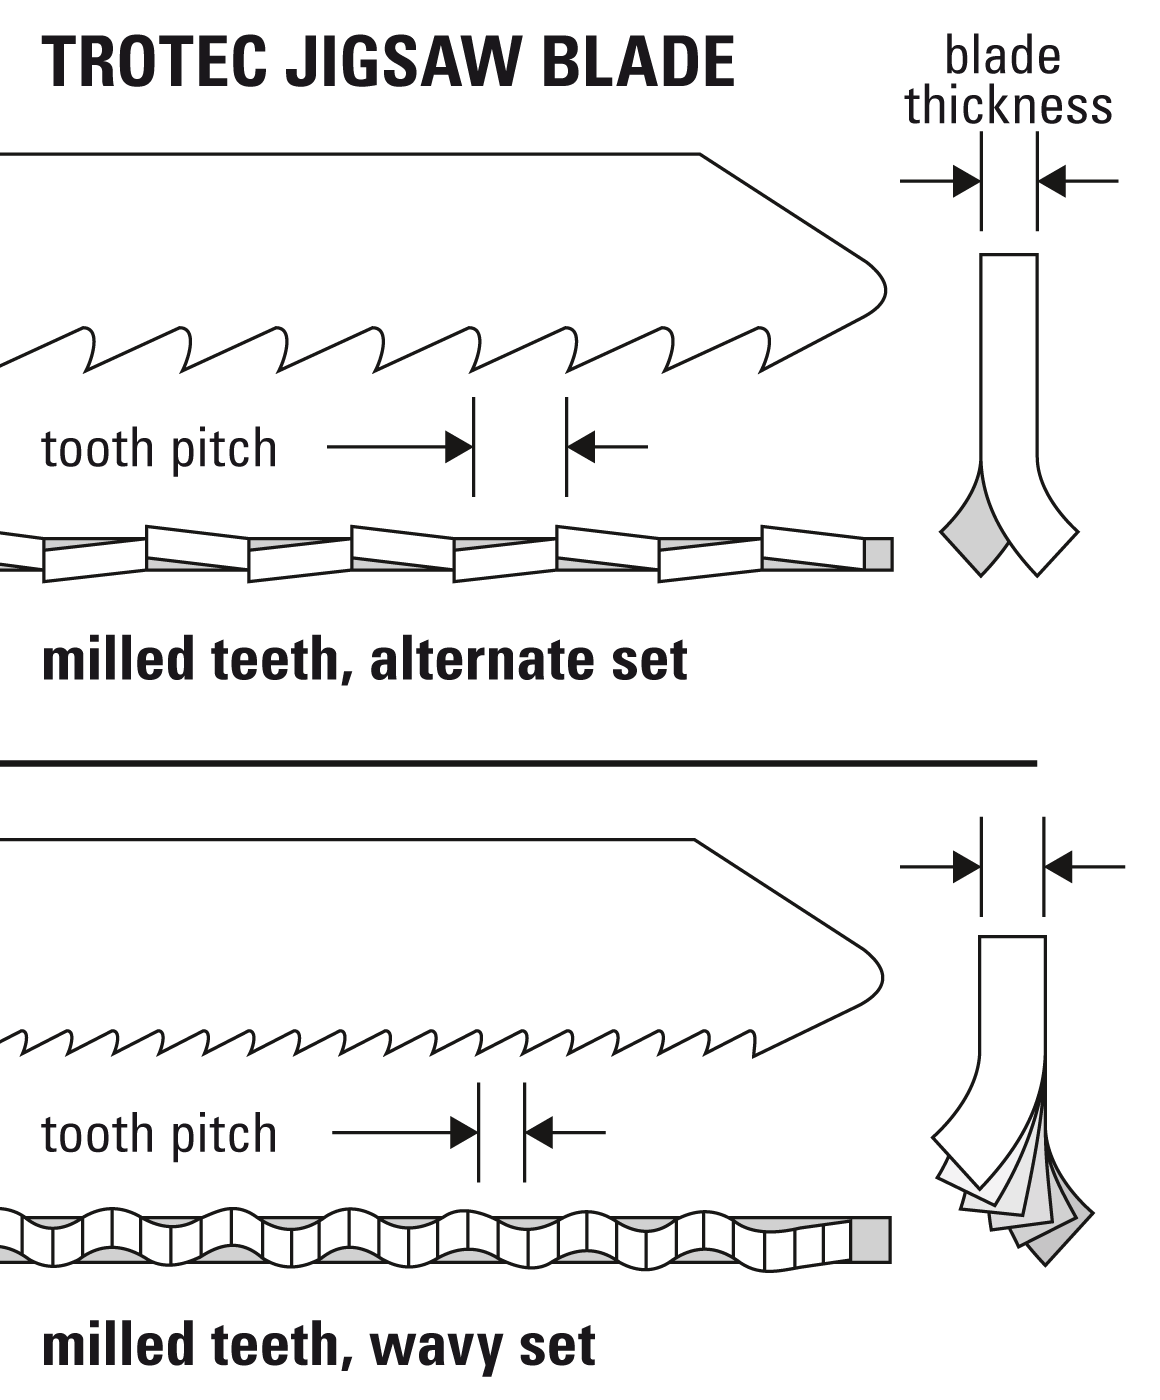 Optimal tooth geometry